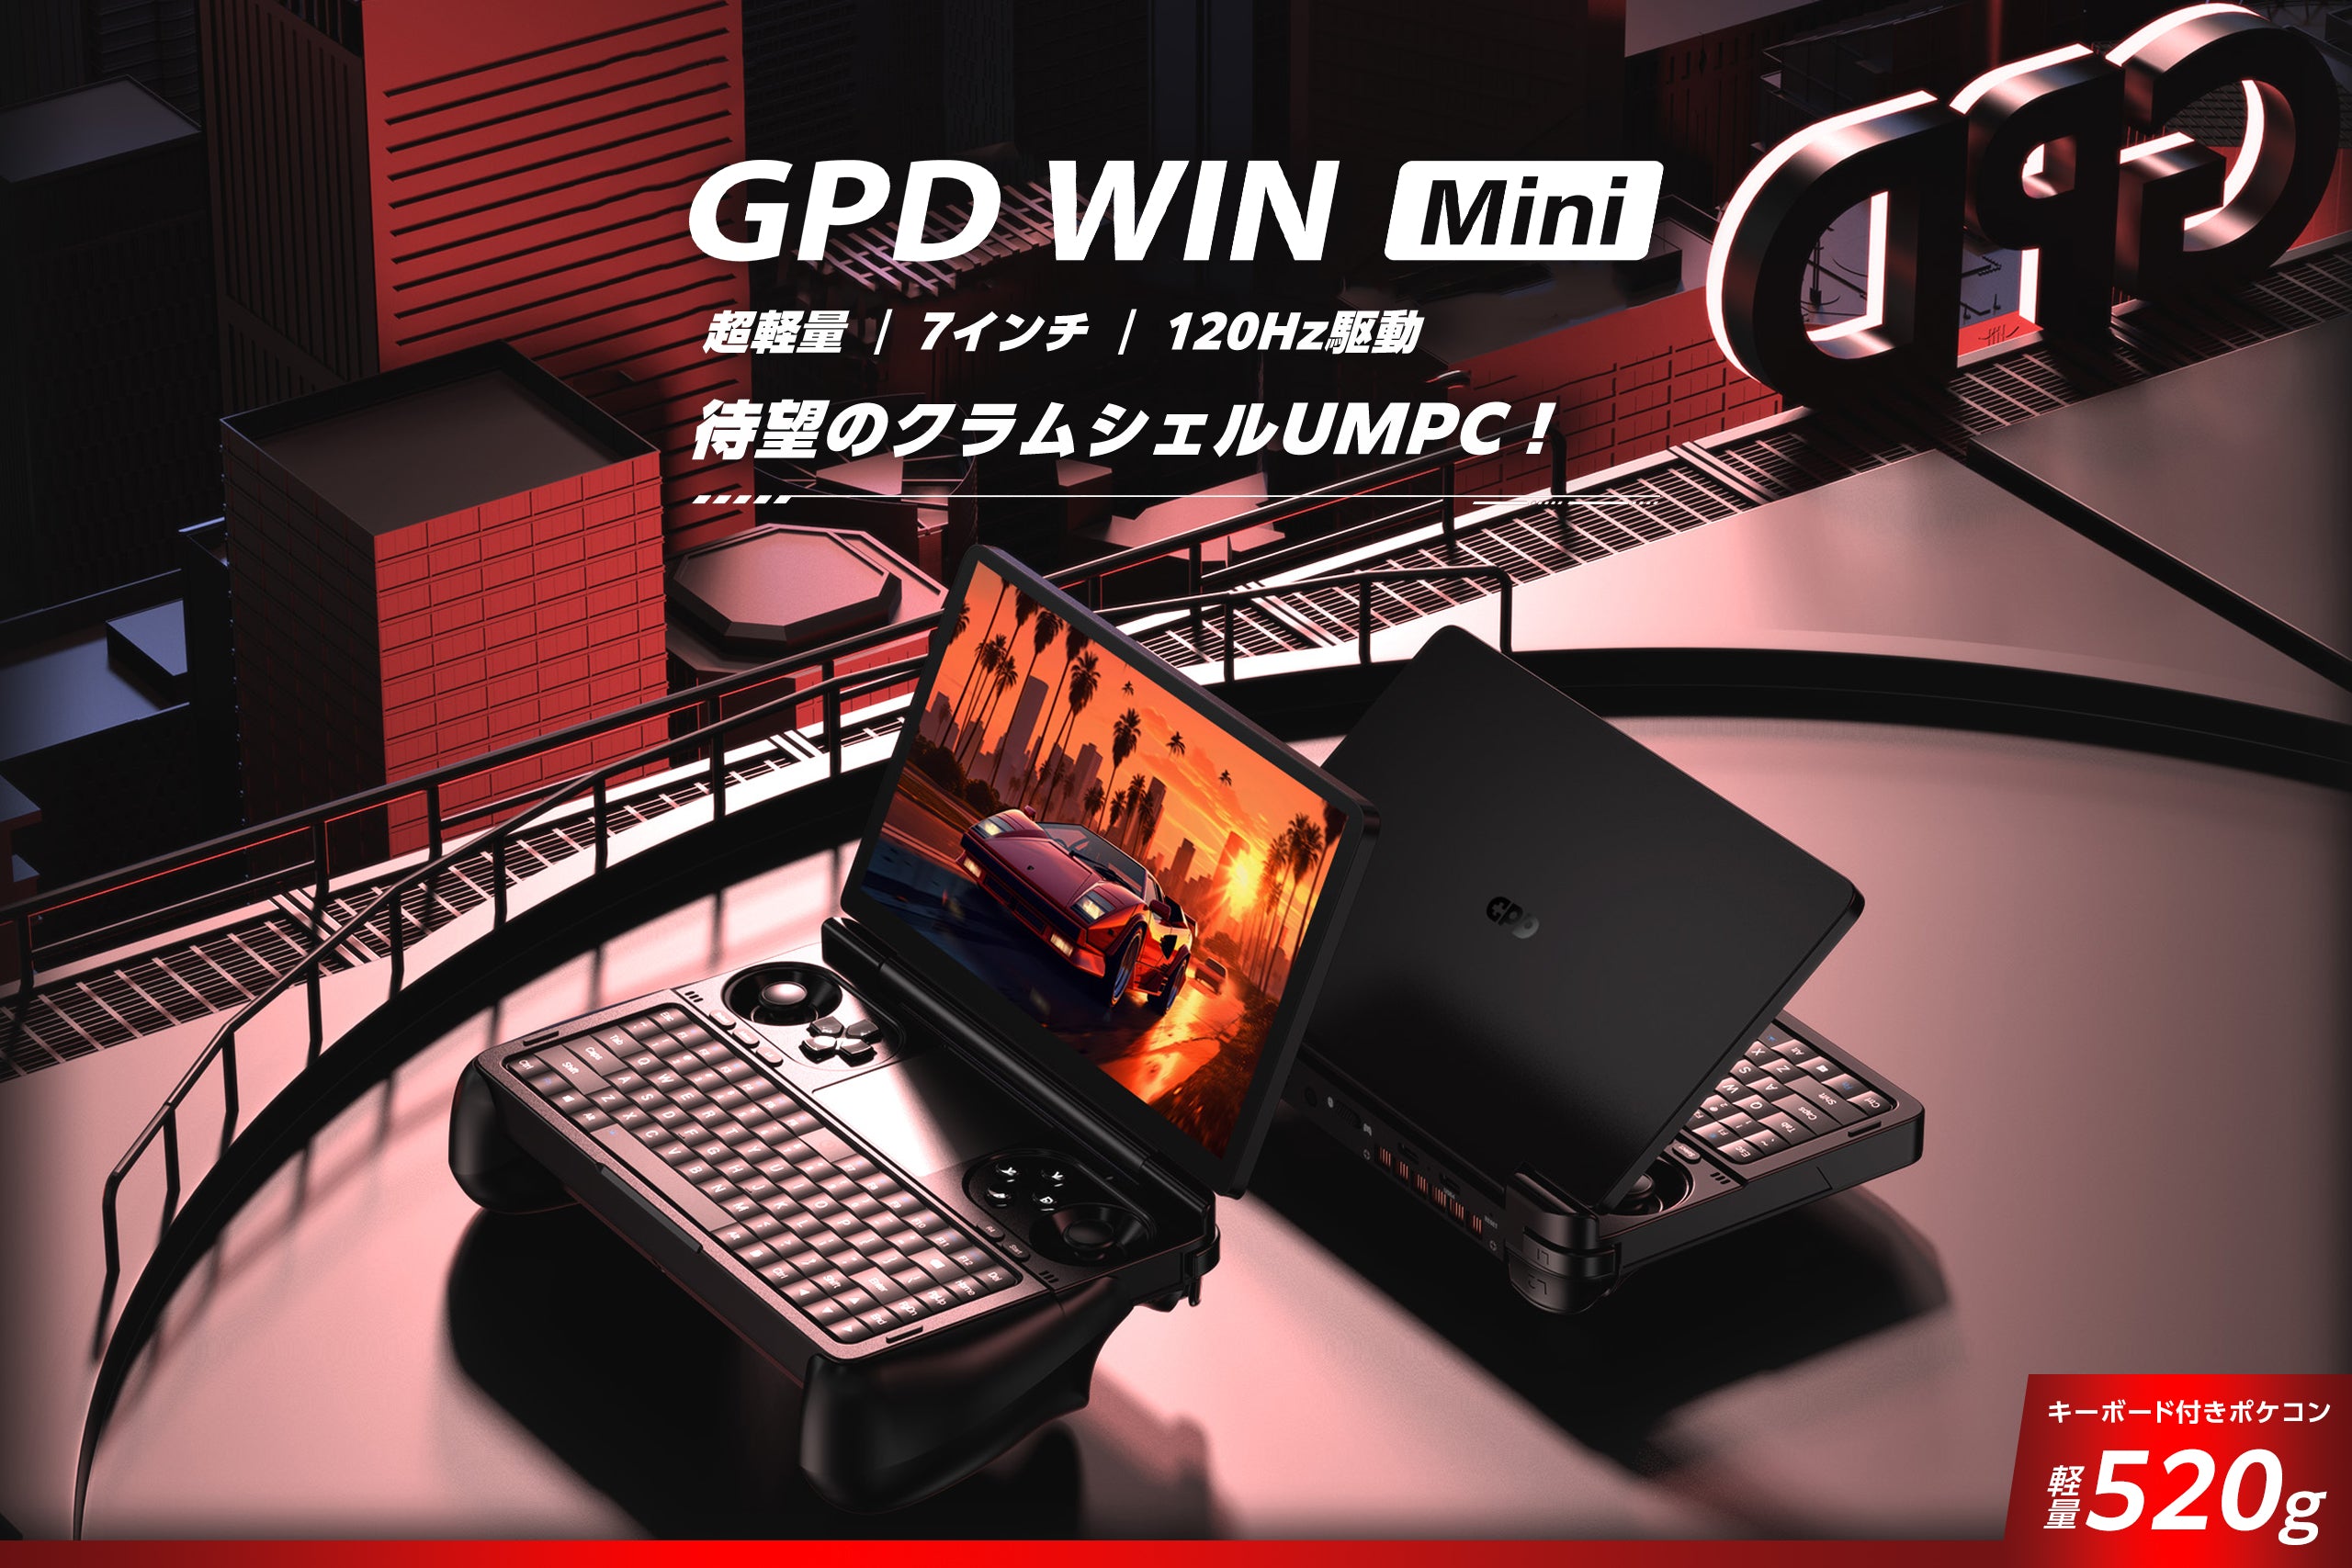 GPD WIN Mini – GPDダイレクト